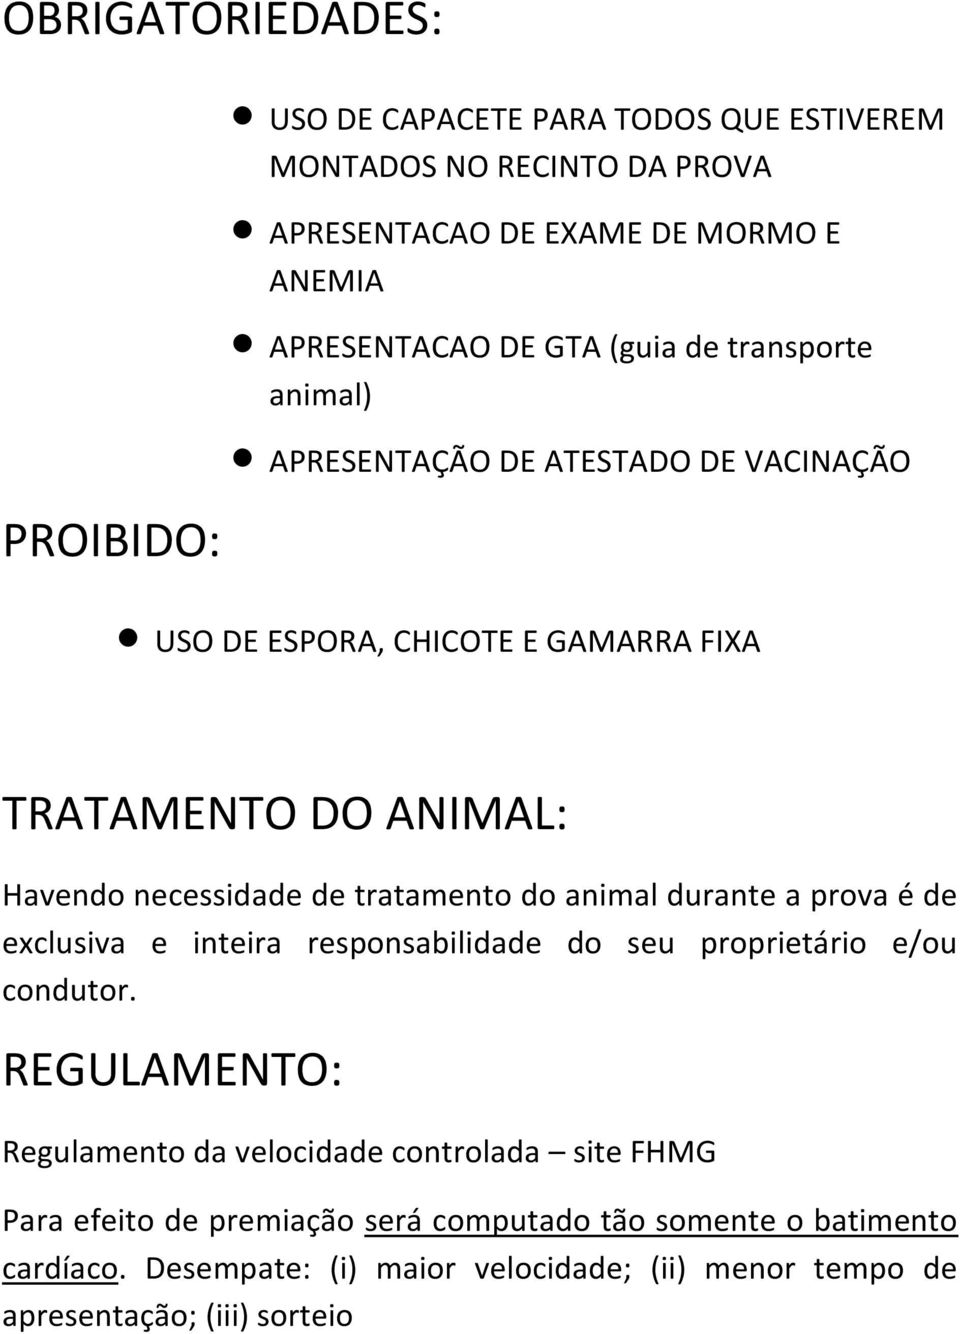 tratamento do animal durante a prova é de exclusiva e inteira responsabilidade do seu proprietário e/ou condutor.